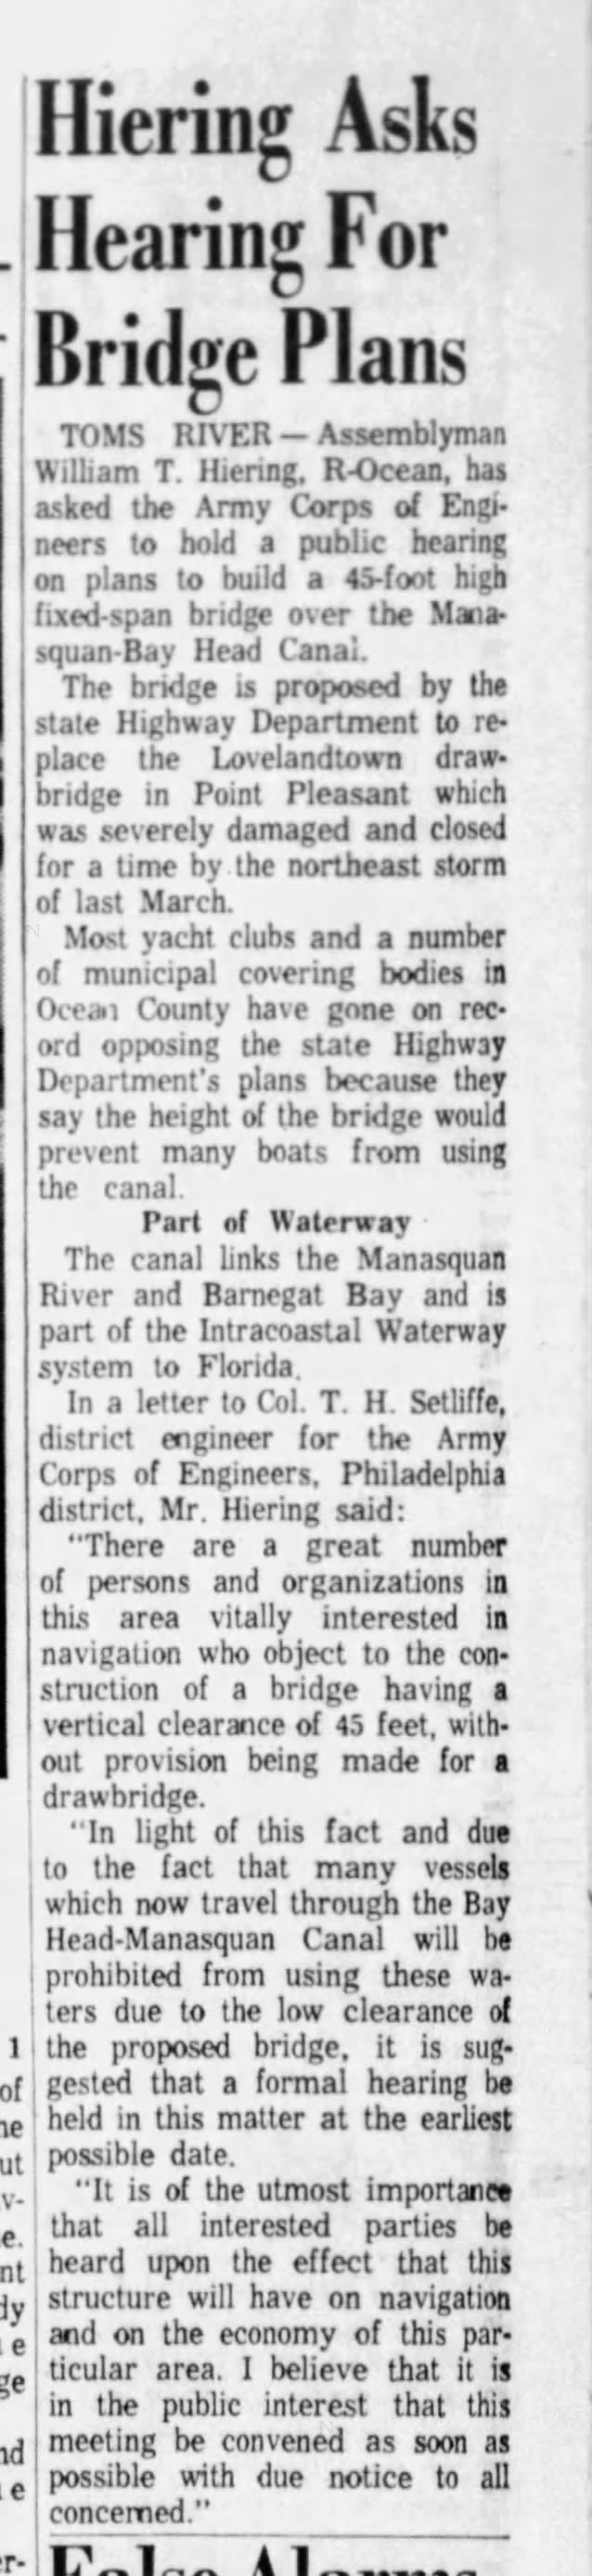 NJ 13, November 1, 1962